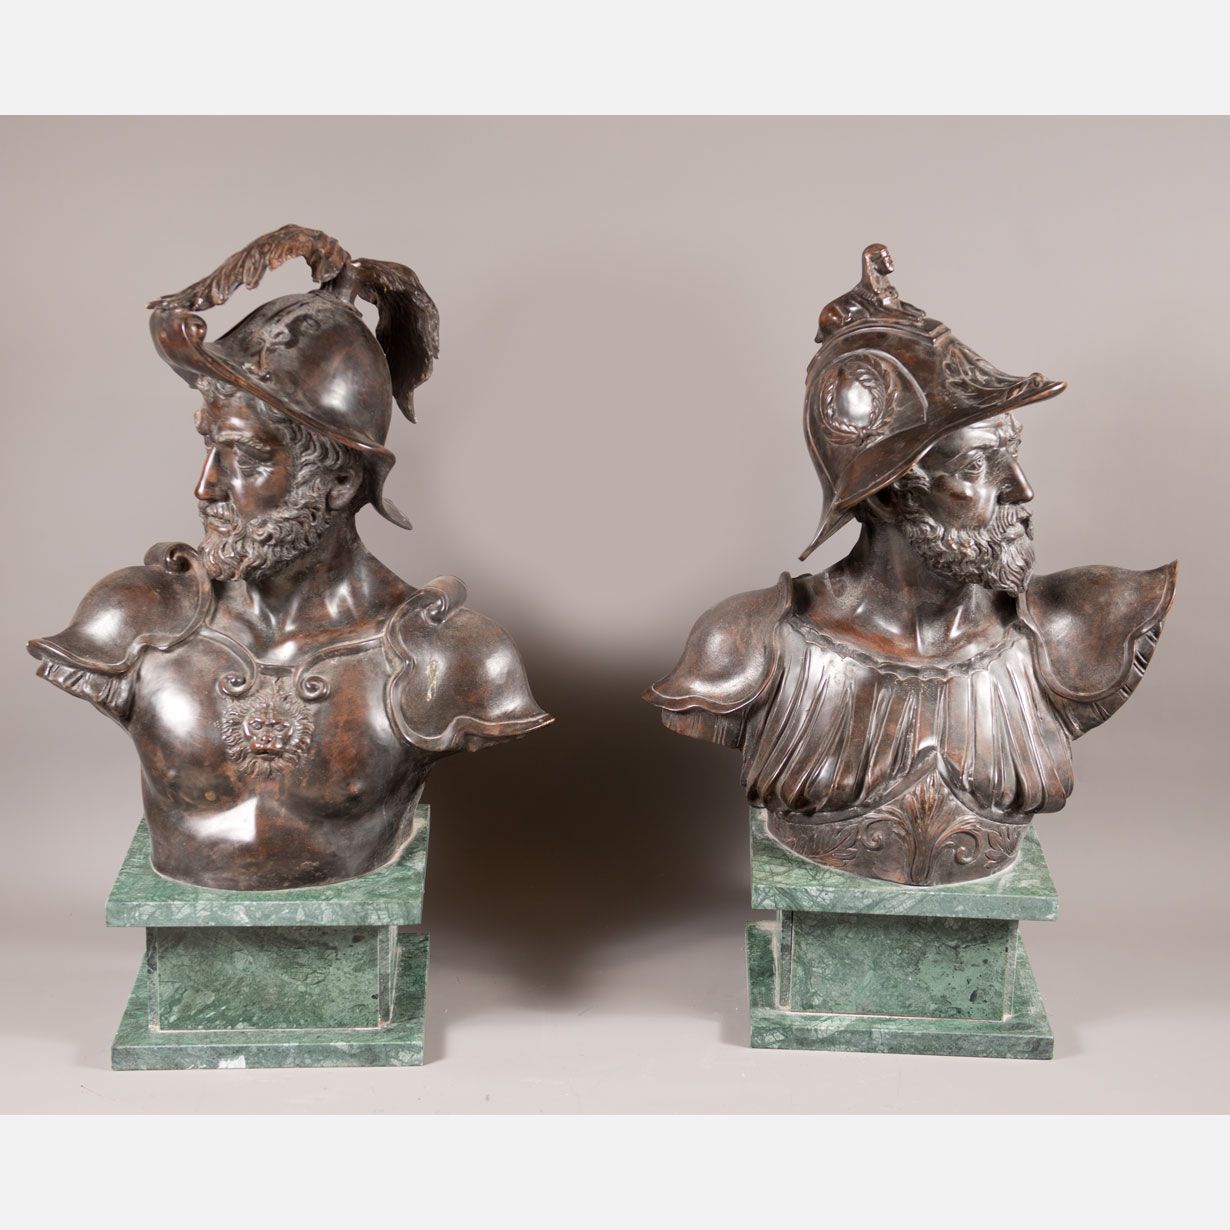 Pear of monumental bronze busts 纪念性的半身铜像梨，两个穿着盔甲的历史将军，在绿色大理石底座上；原始的青铜铸造，有浅棕色的铜锈；&hellip;